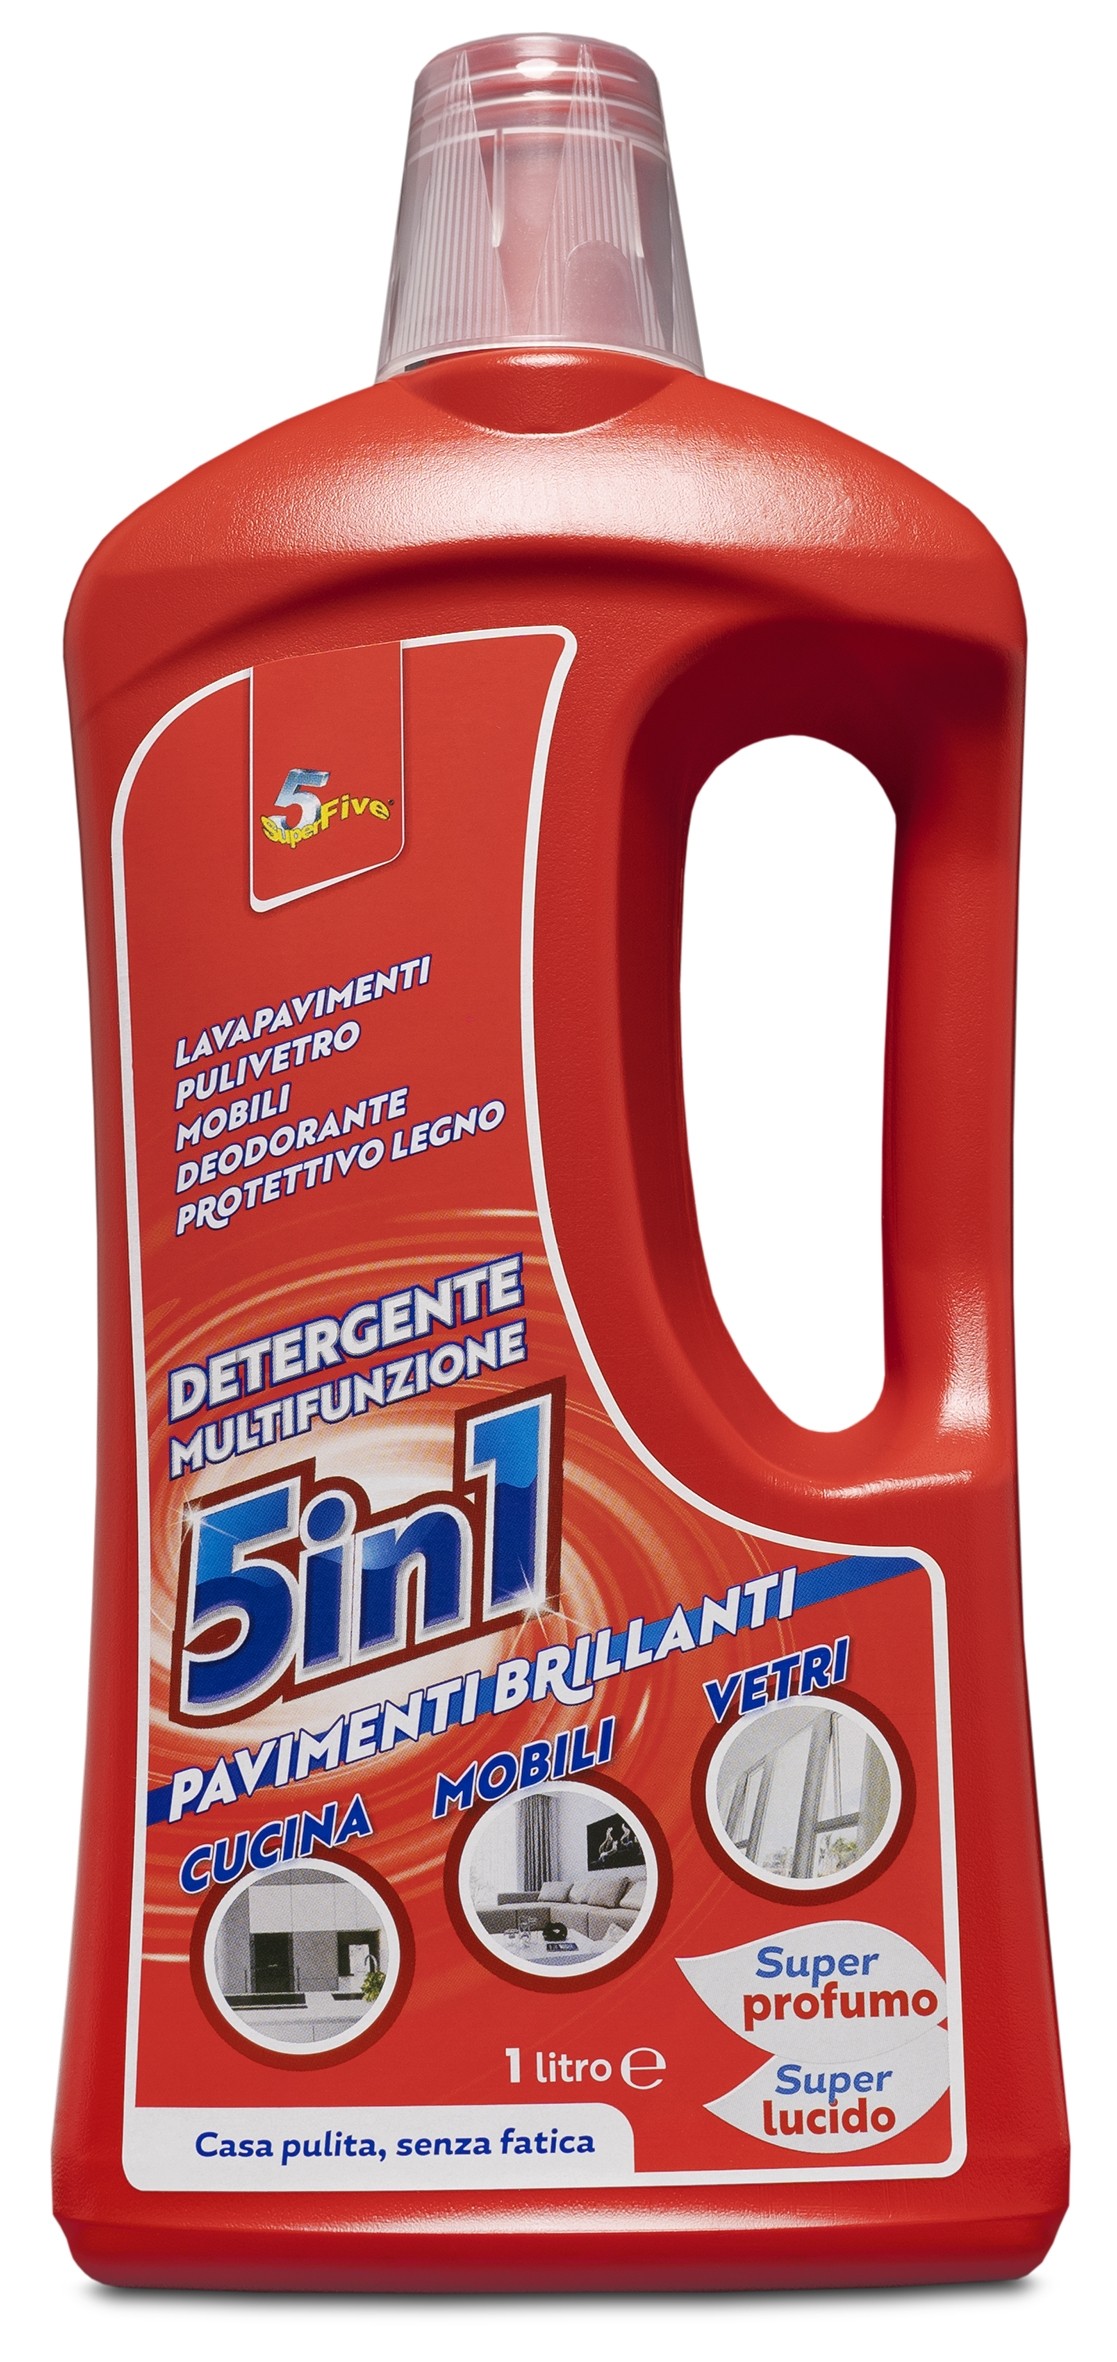 Superfive  Detergente Multi Funzione 5 in 1 - Pavimenti - Detergenti - Casa